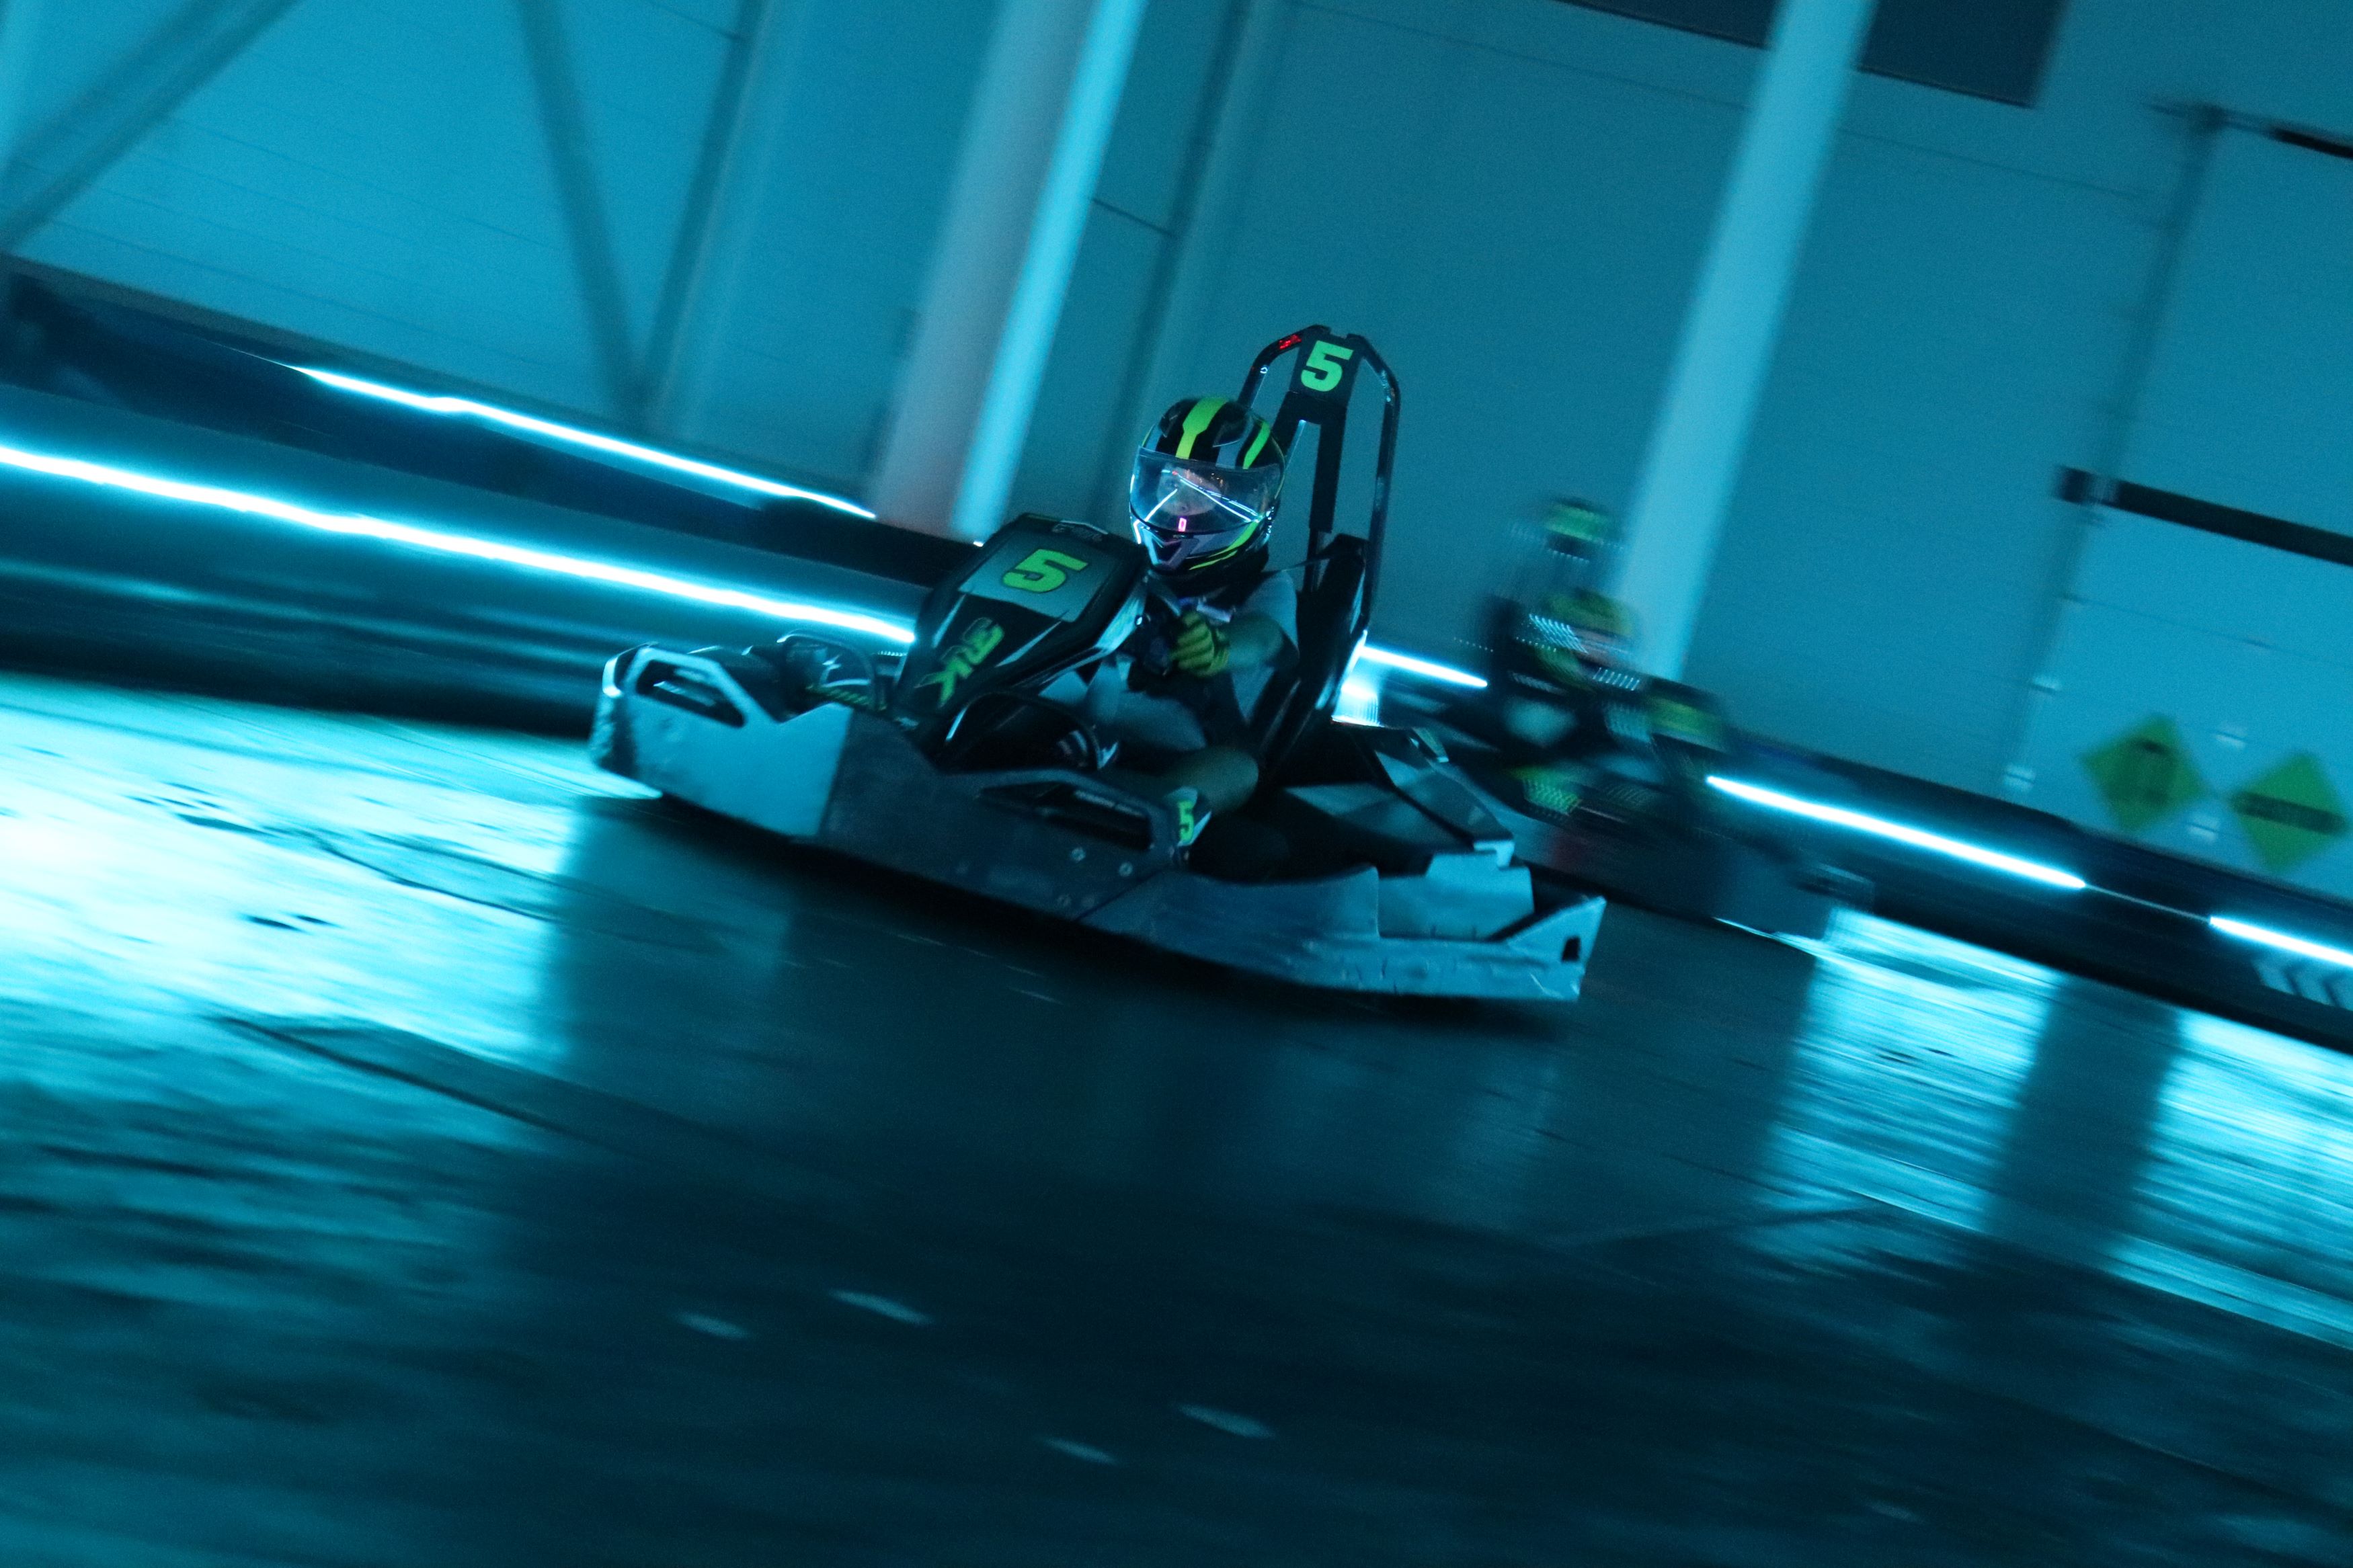 Cosmic karting is always fun!